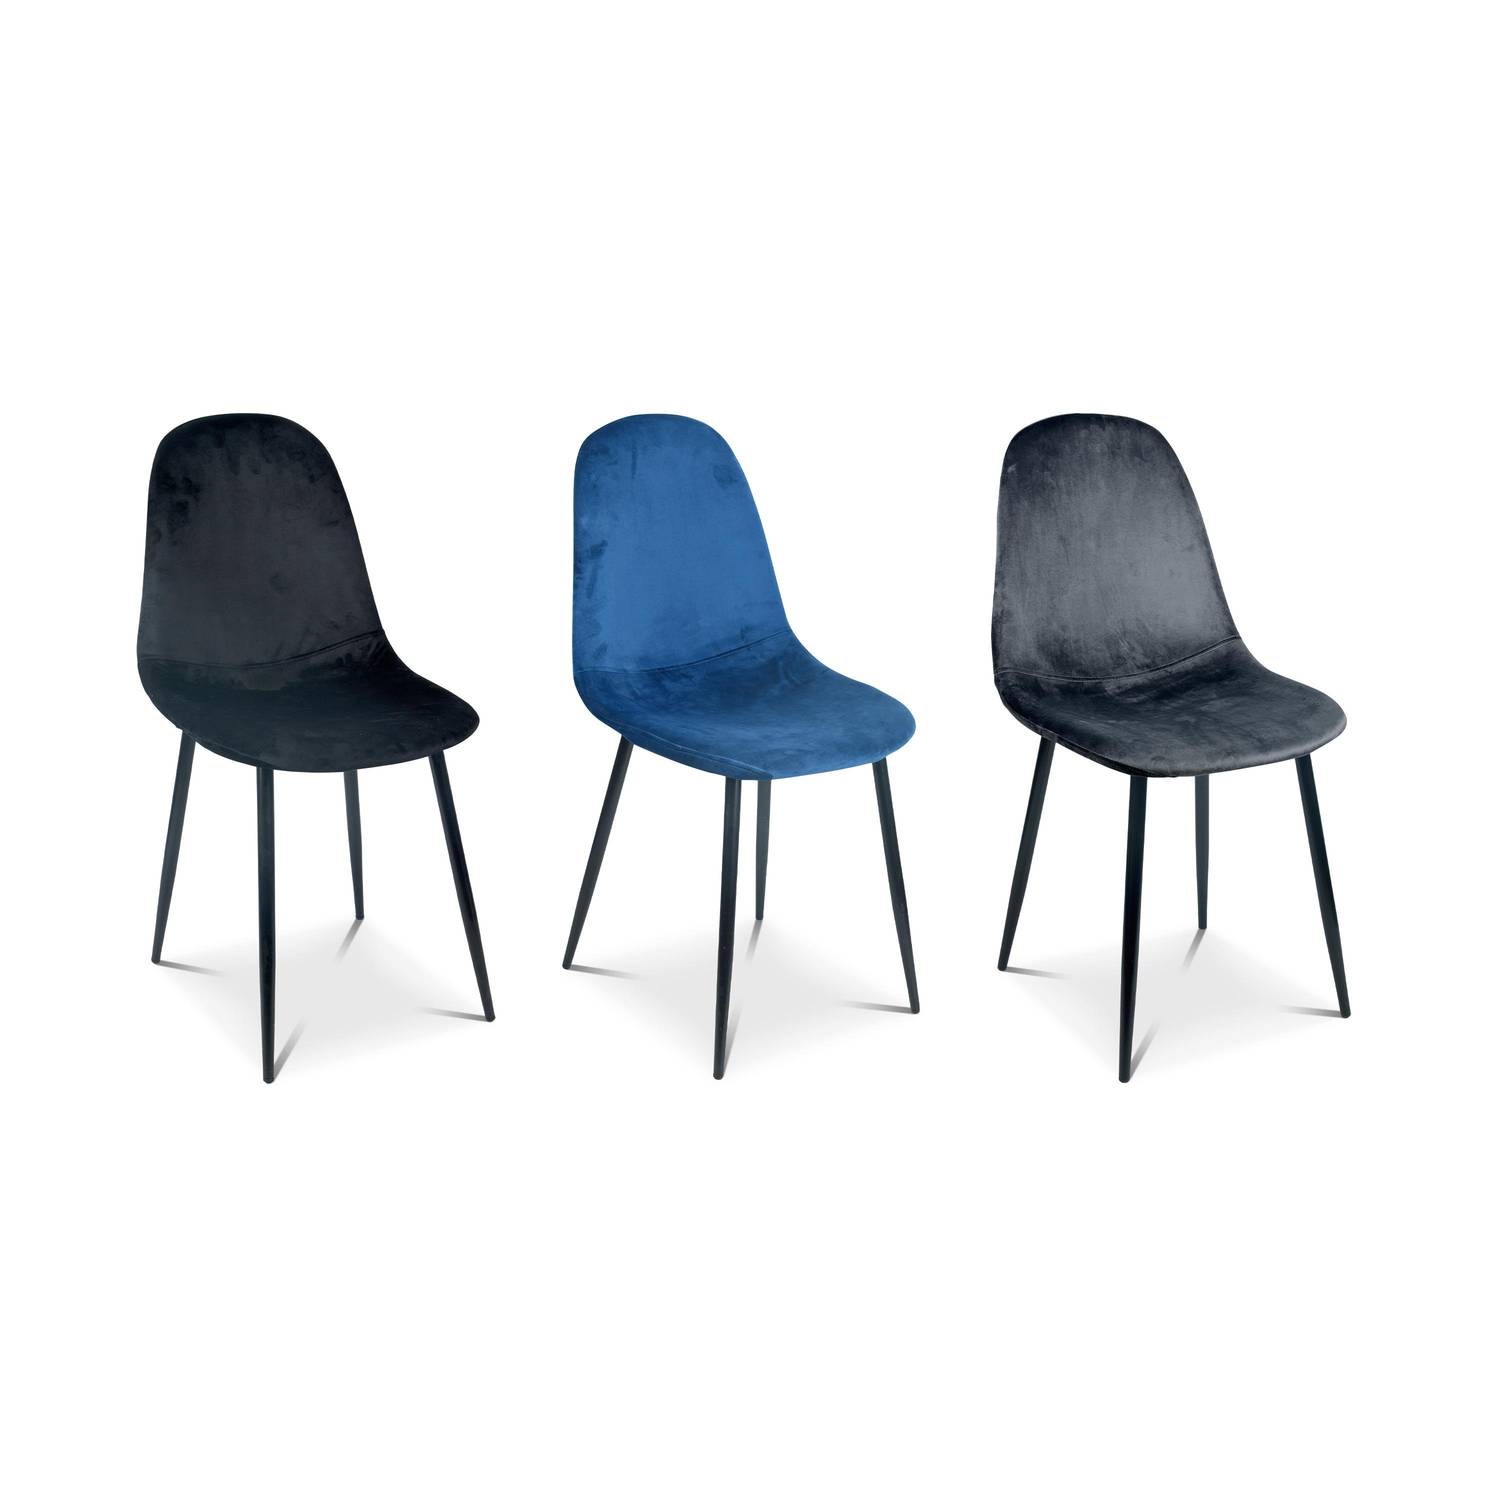 Set van 4 stoelen - Bombay - velours stoelen, metalen poten, vintage, comfortabel, design, stalen onderstel, B44xD53 x H88cmn - Blauw Photo6